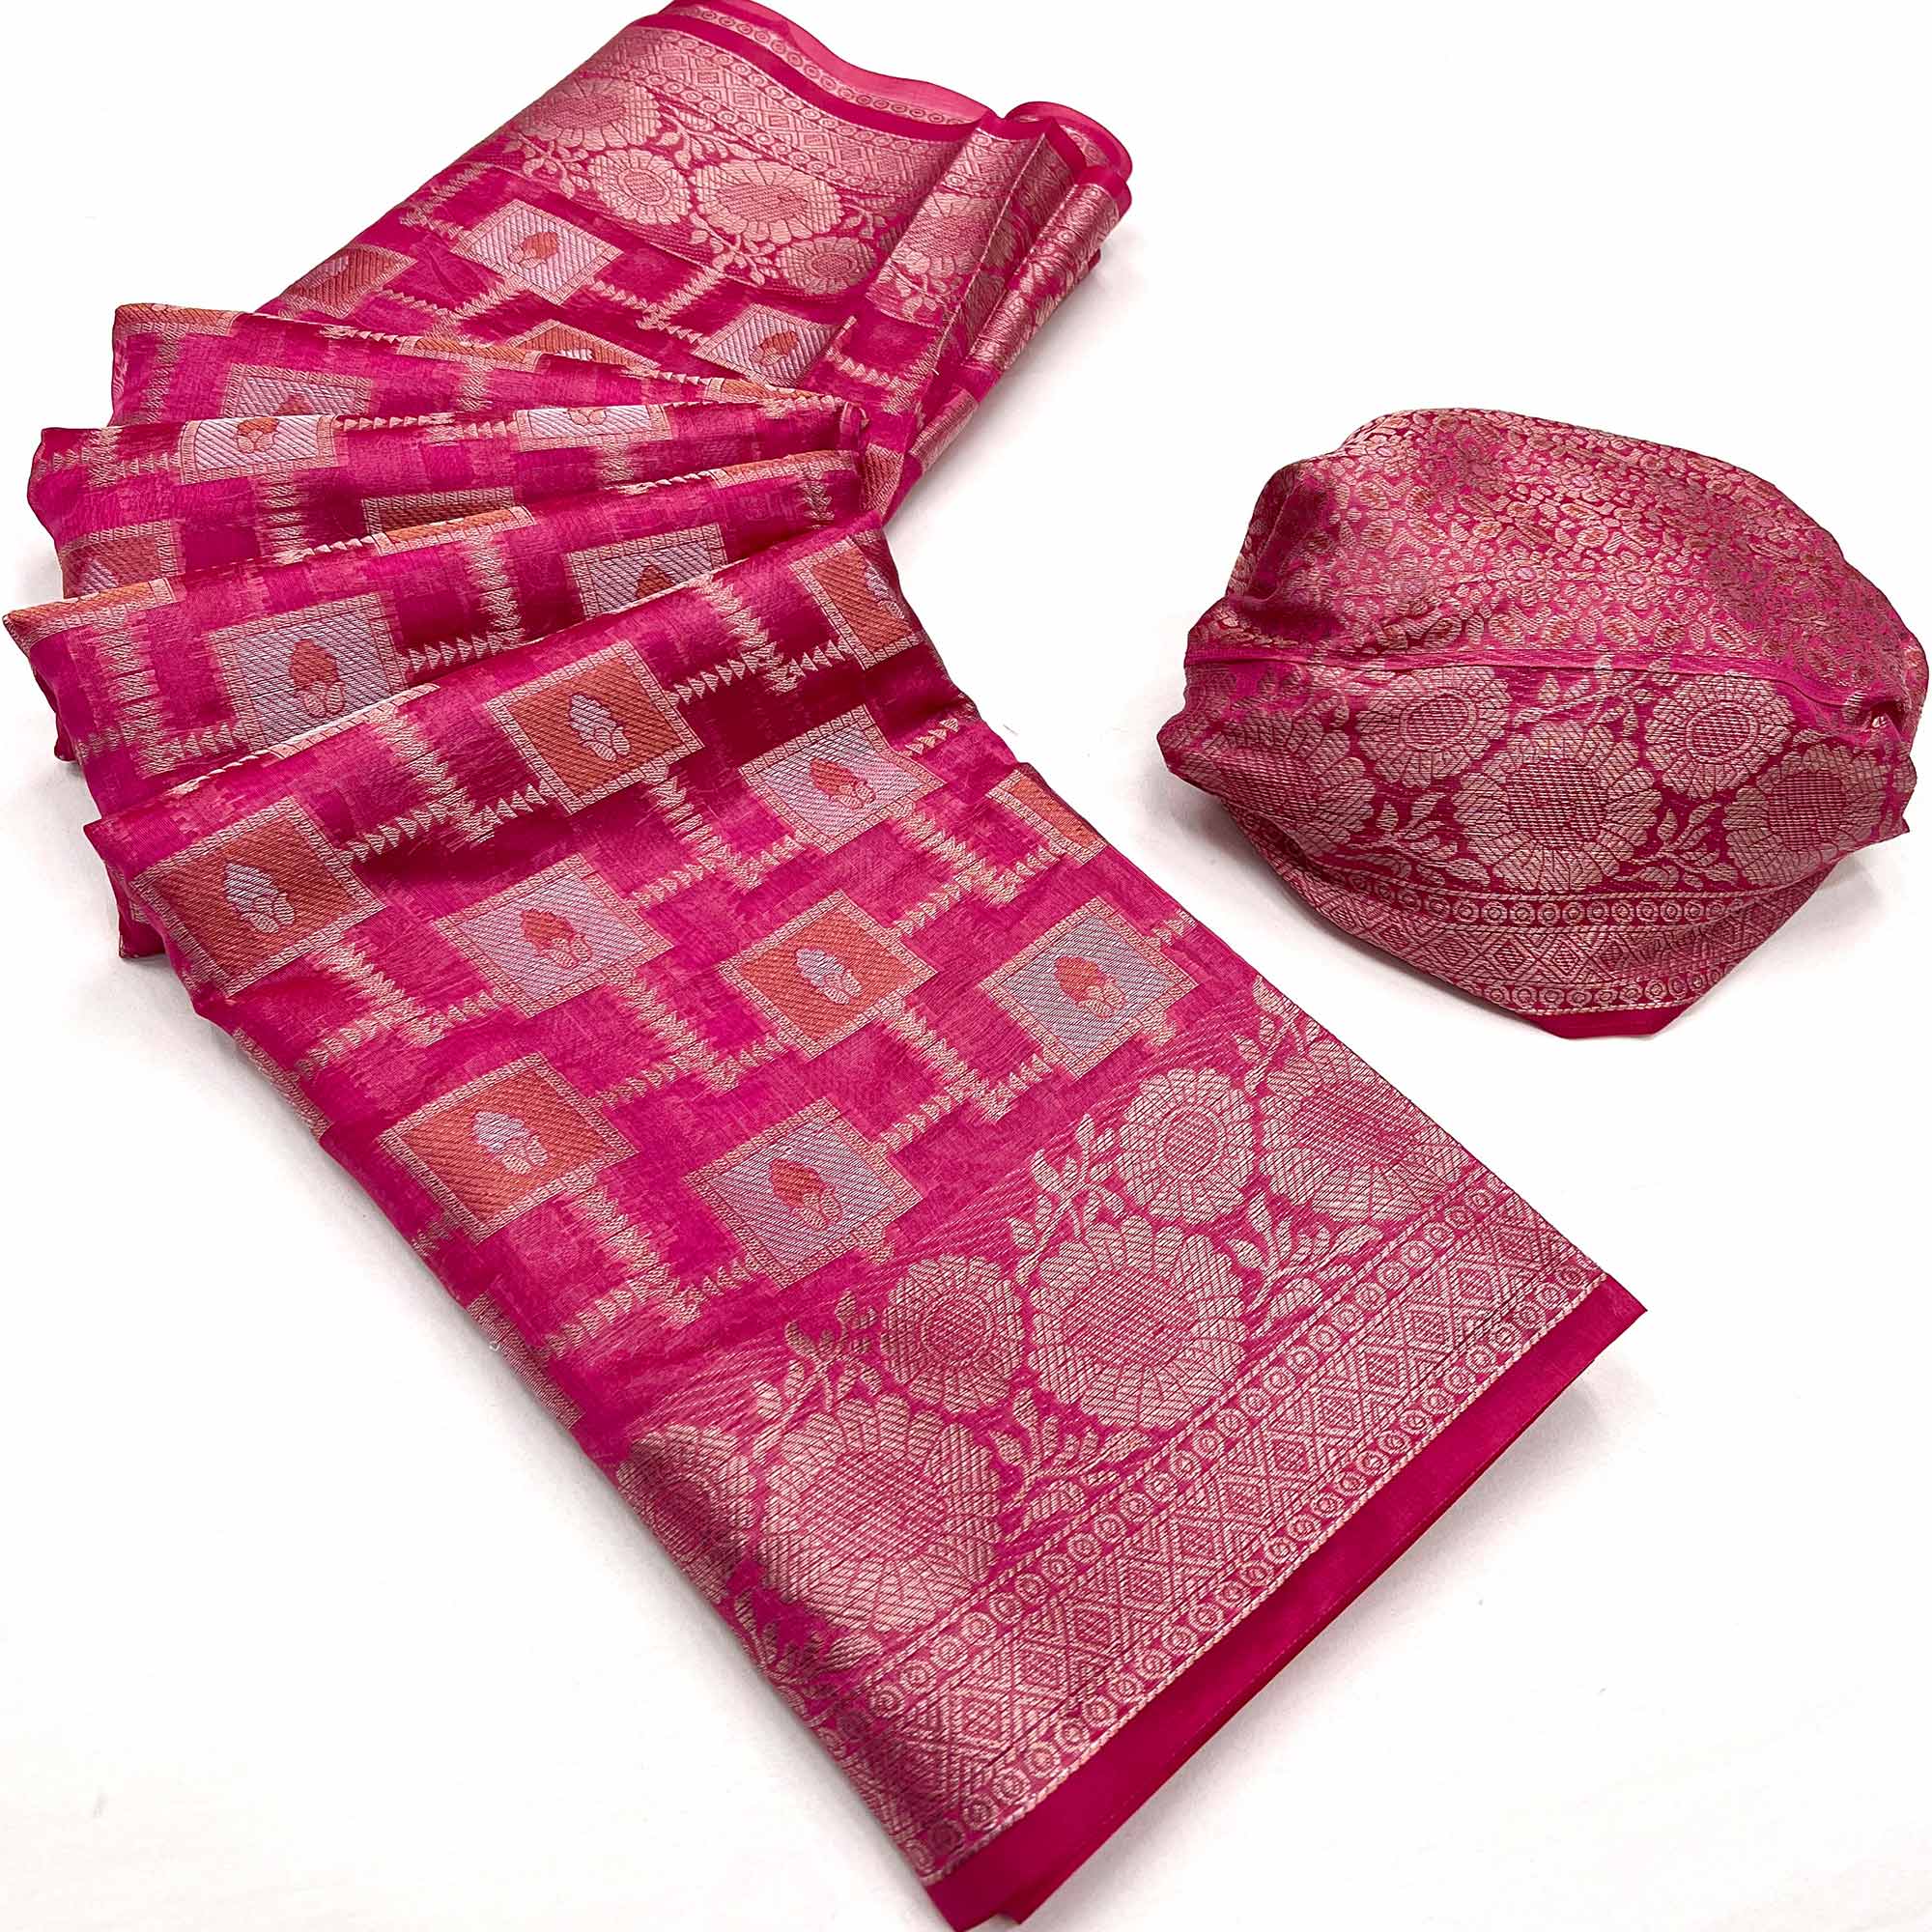 Rani Pink Floral Woven Organza Saree